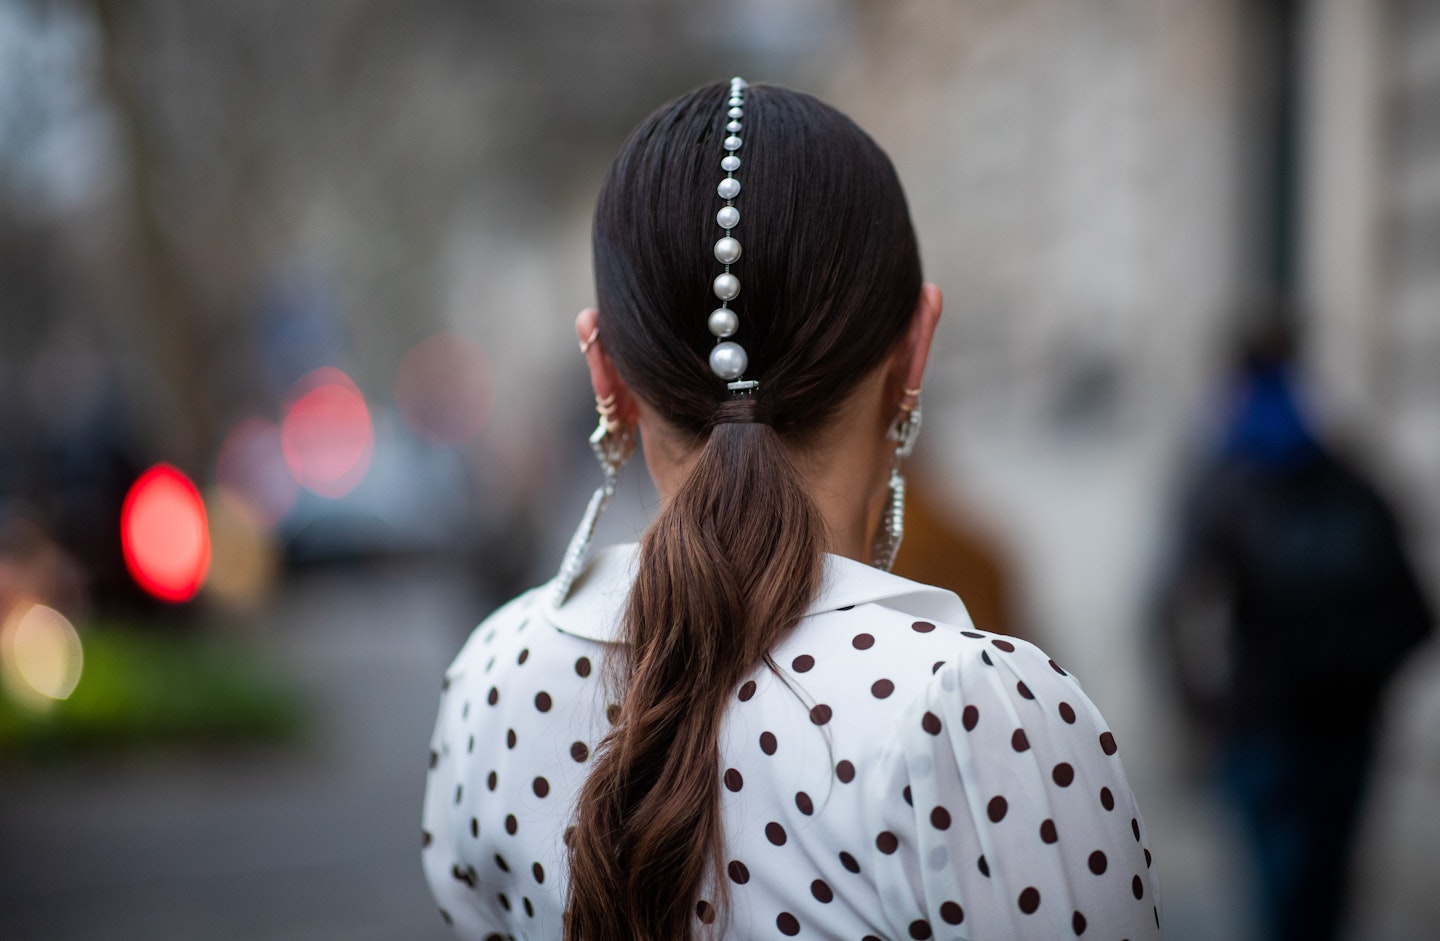 pearls worn in hair street style 